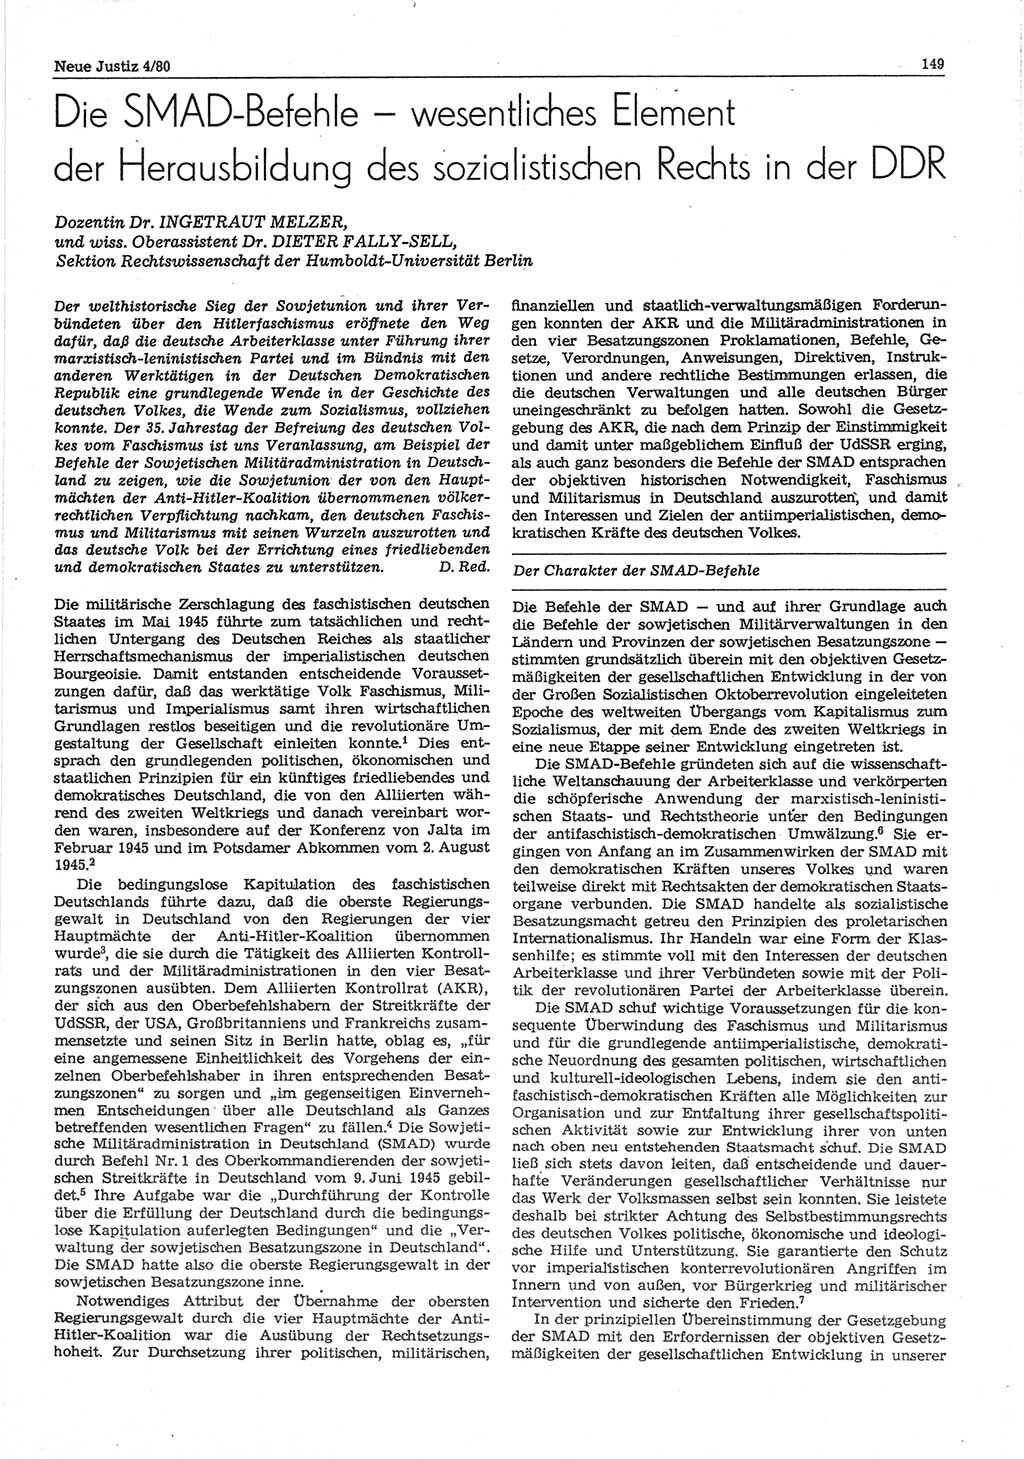 Neue Justiz (NJ), Zeitschrift für sozialistisches Recht und Gesetzlichkeit [Deutsche Demokratische Republik (DDR)], 34. Jahrgang 1980, Seite 149 (NJ DDR 1980, S. 149)